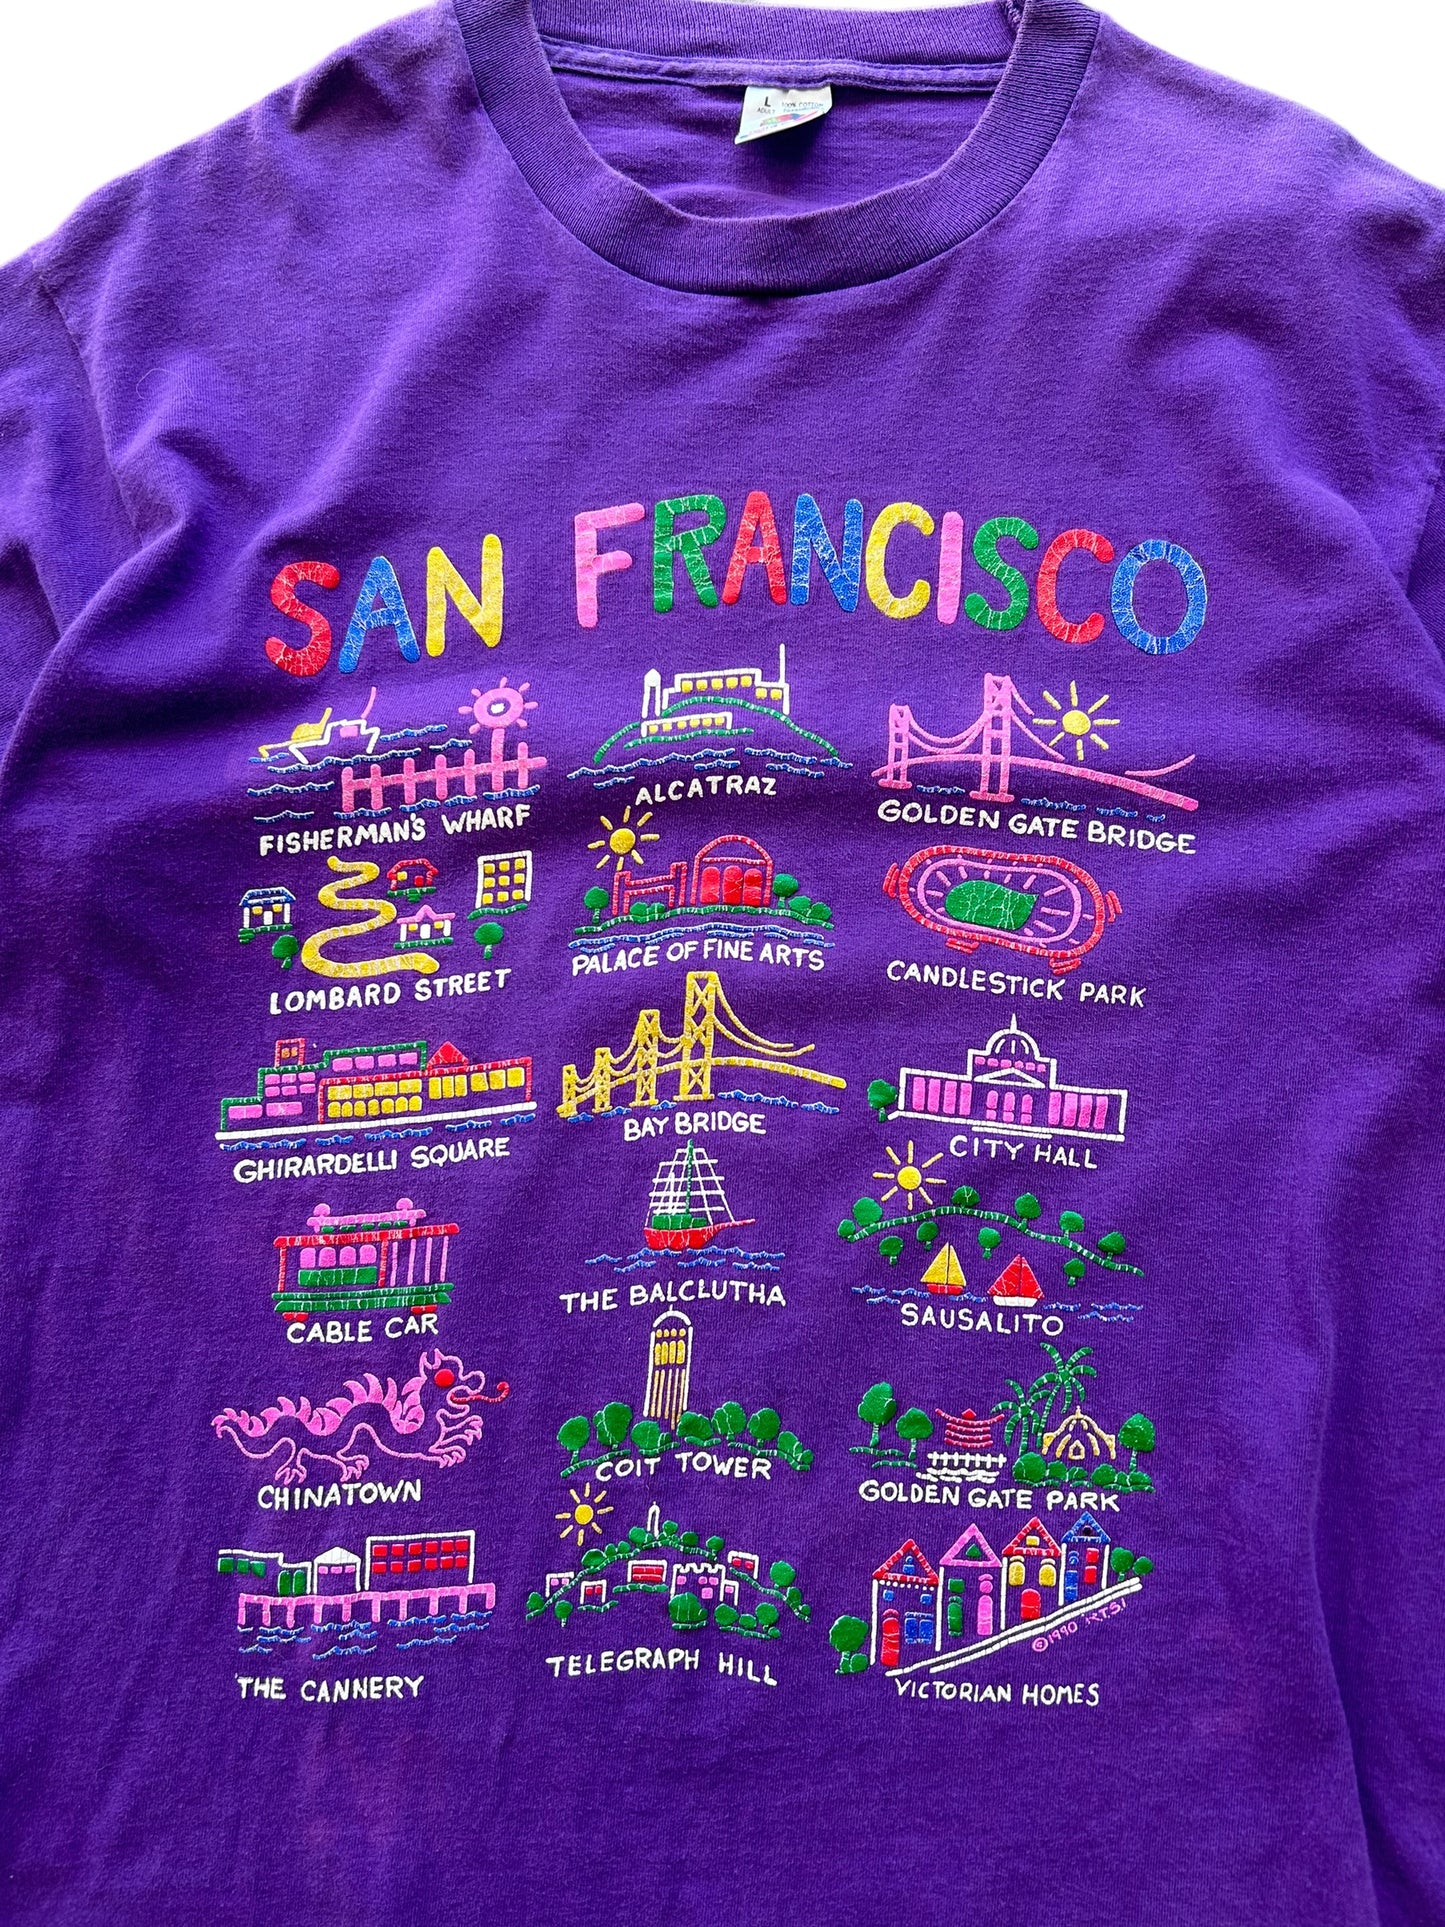 1990 San Francisco Tee